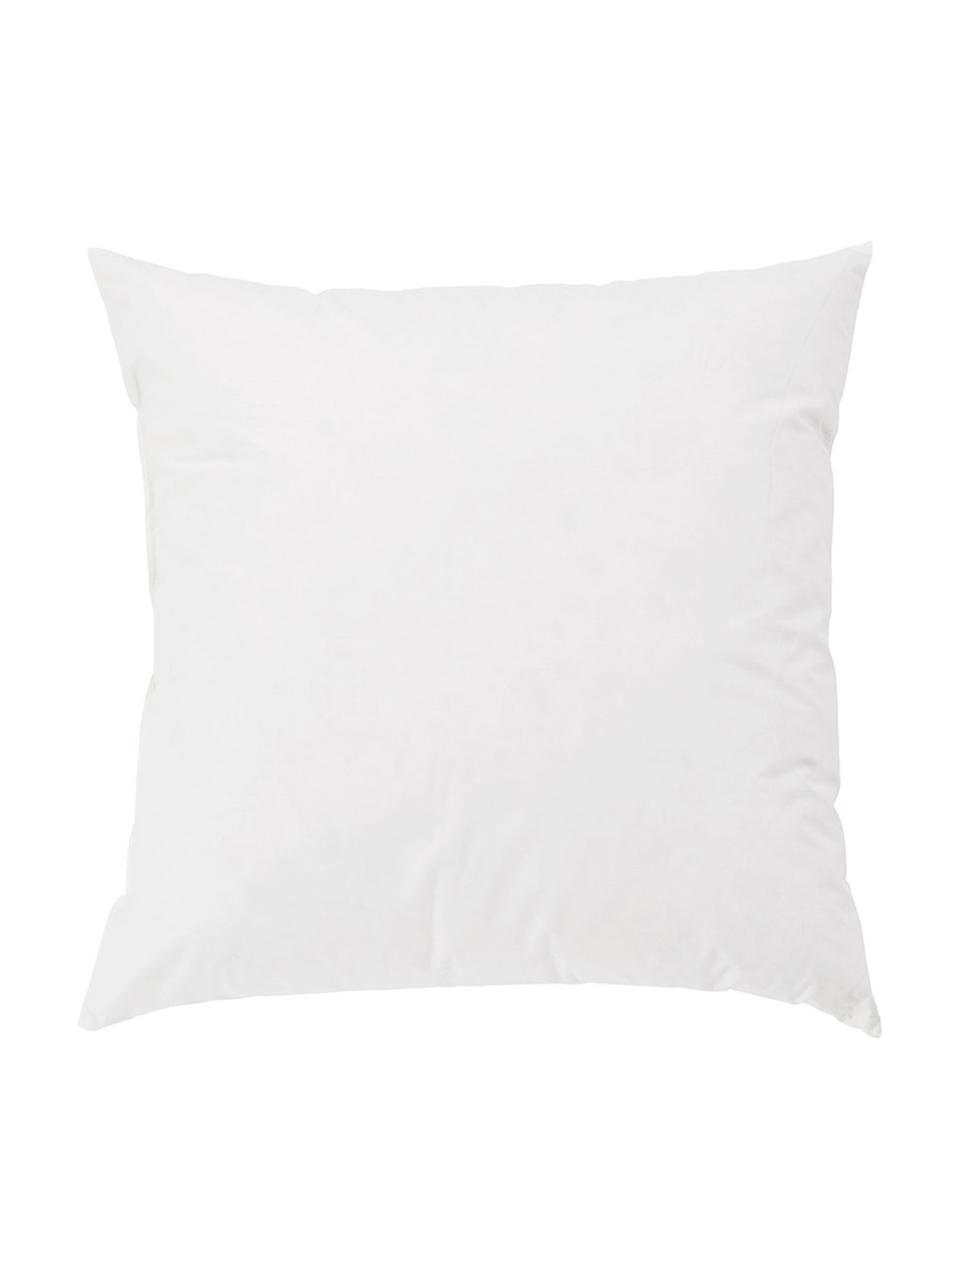 Wkład do poduszki dekoracyjnej z pierza Premium, 60x60, Biały, S 60 x D 60 cm